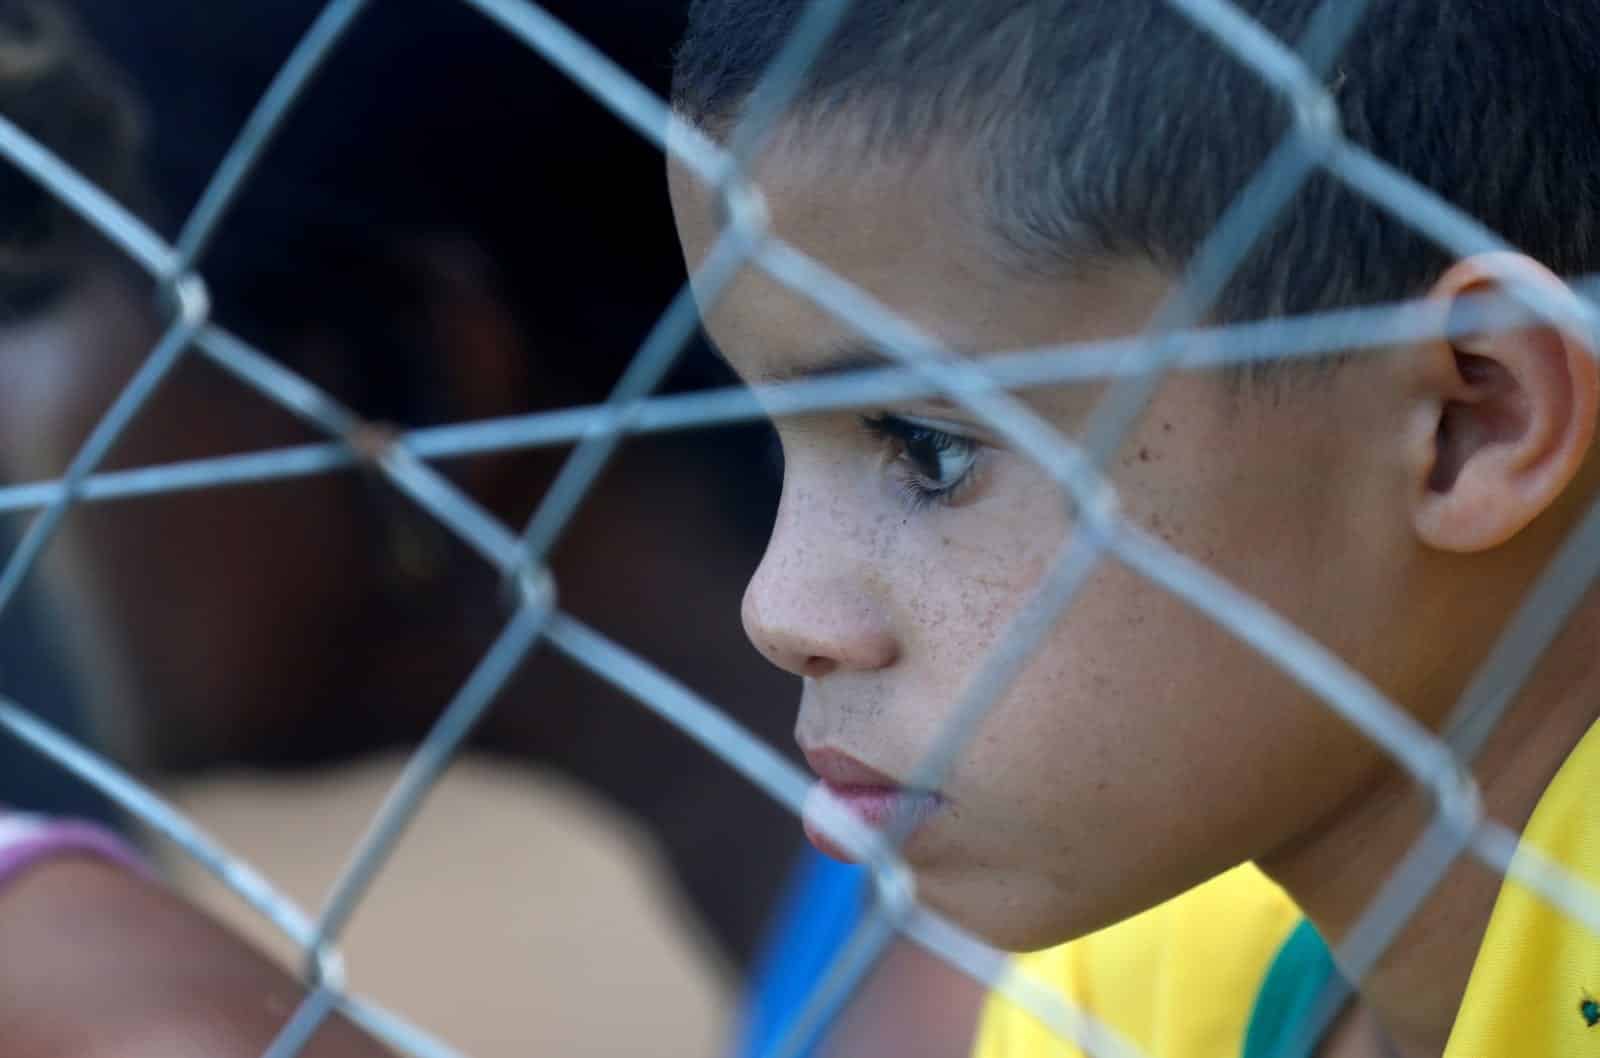 30 fotos que revelam o desespero da tragédia em Brumadinho